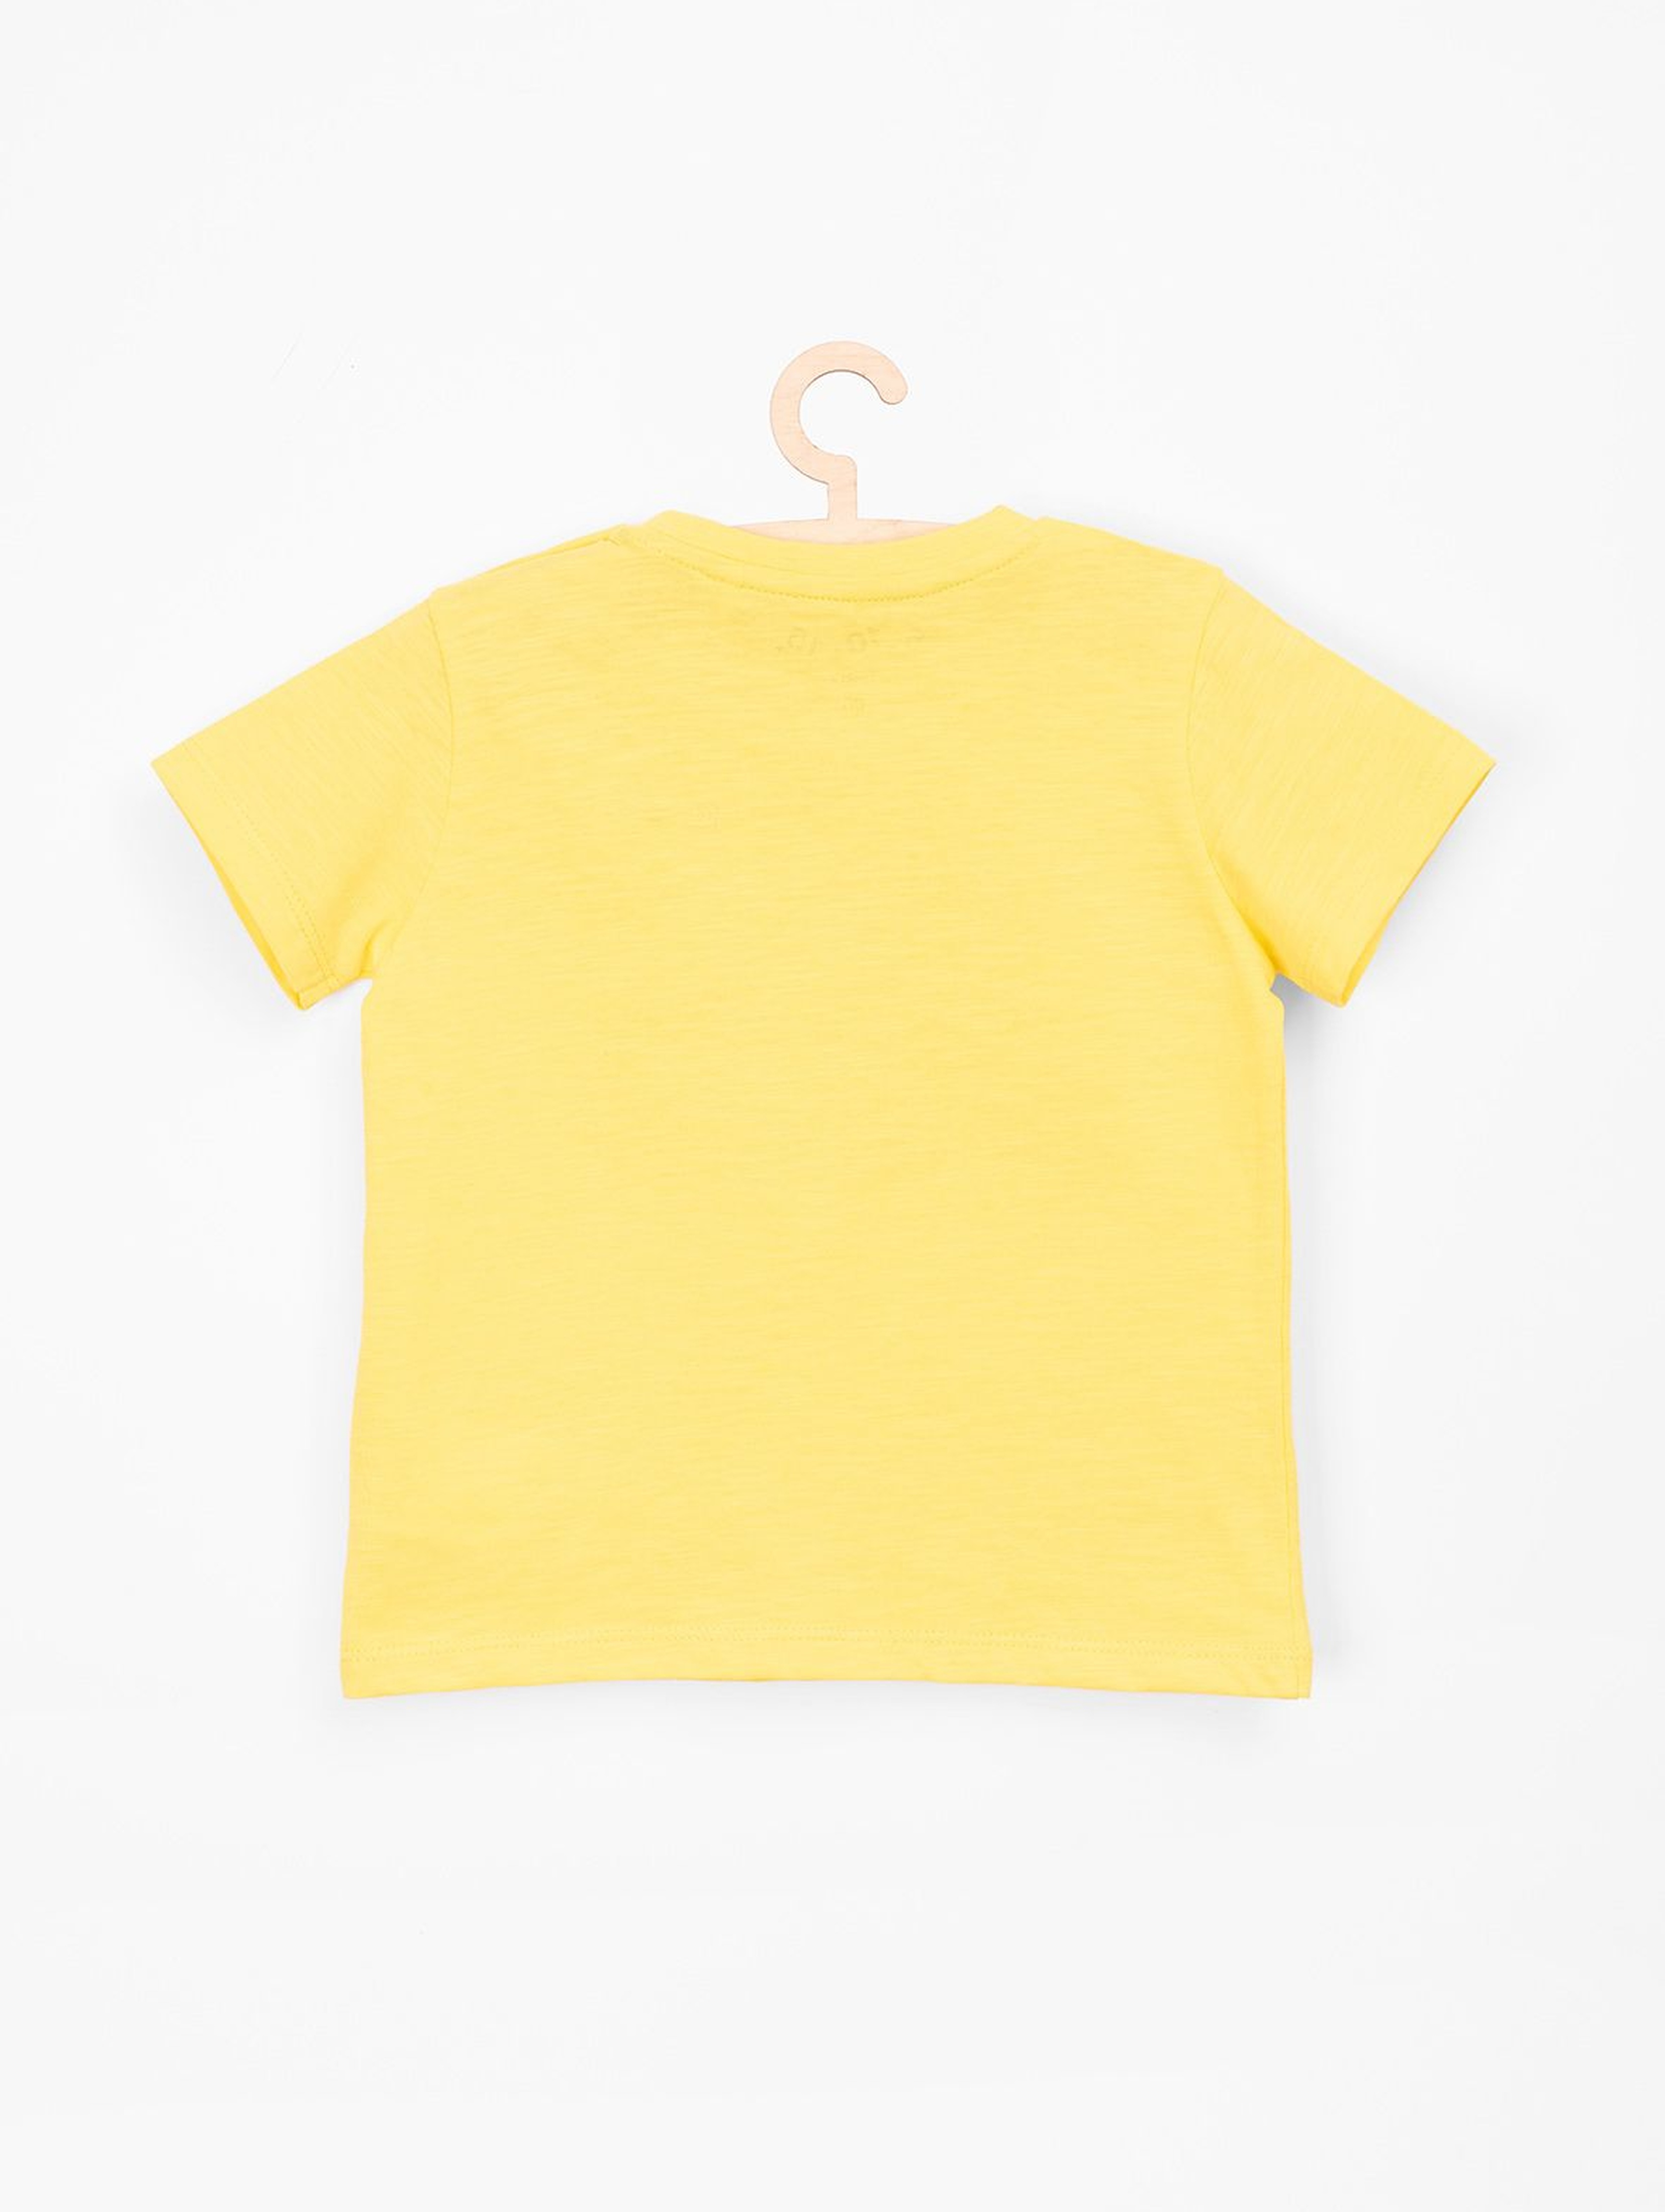 T-shirt dla niemowlaka żółty z polskimi napisami